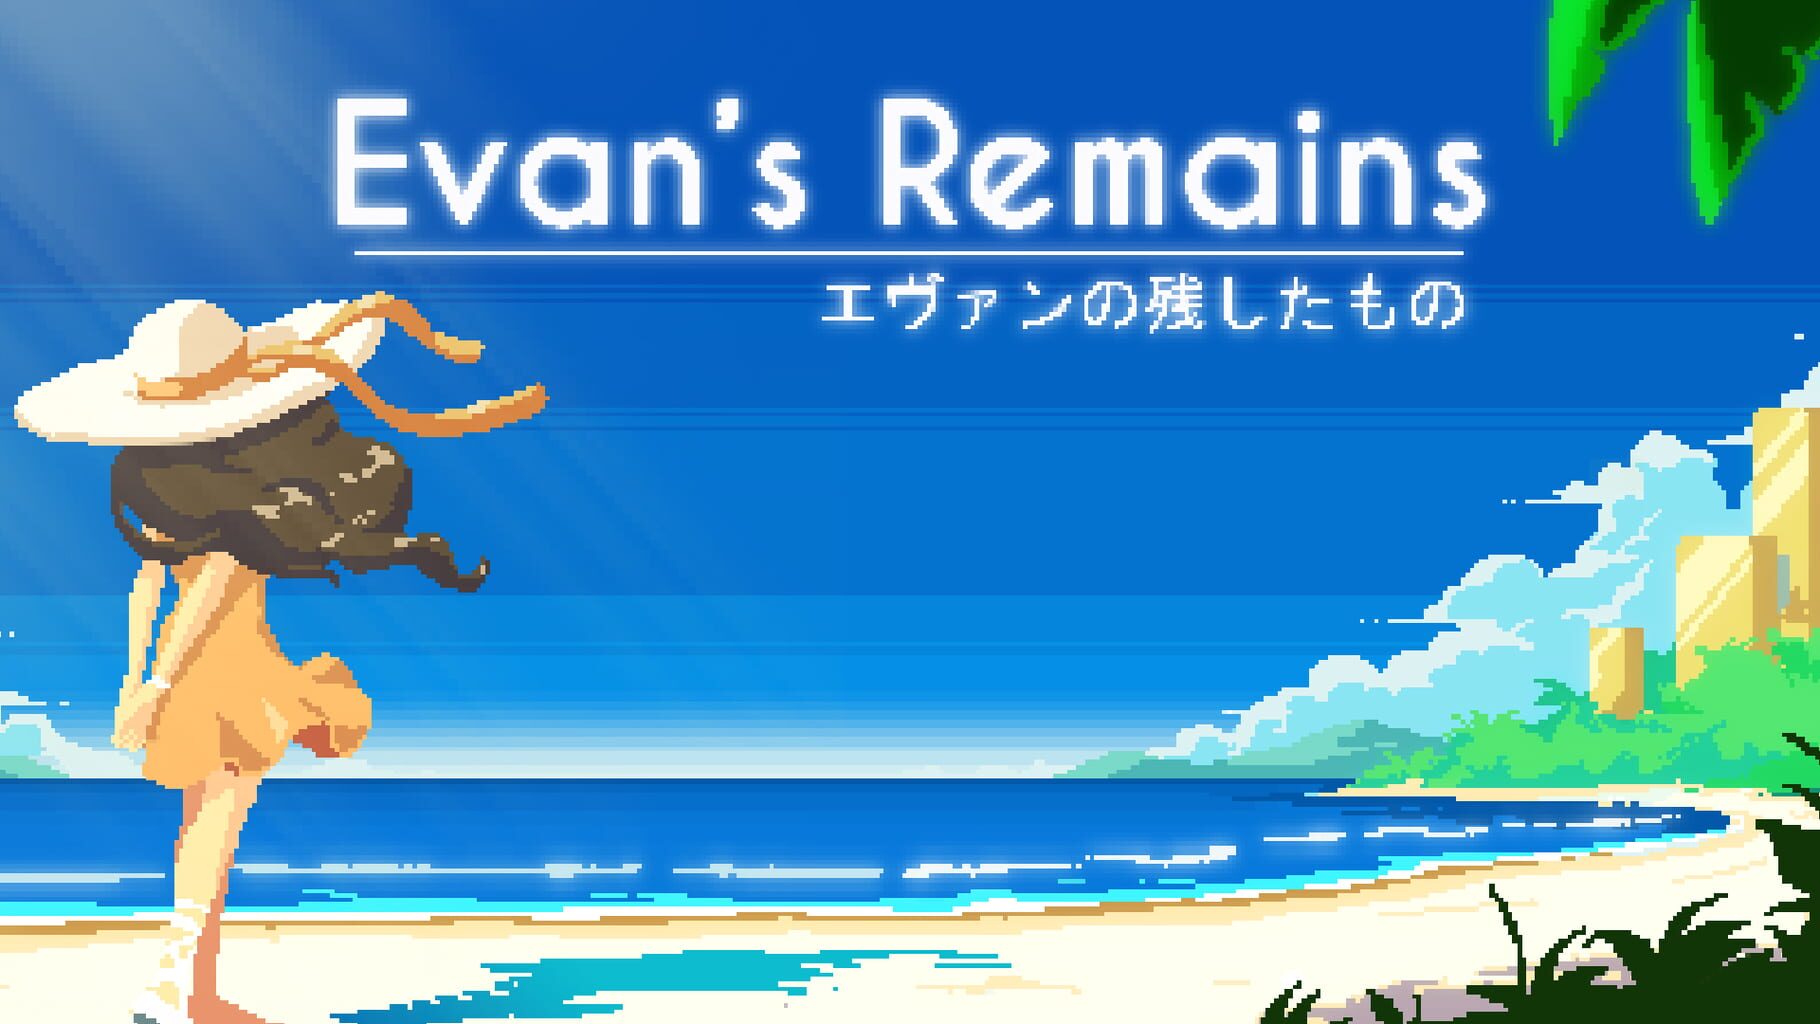 Evan's Remains artwork